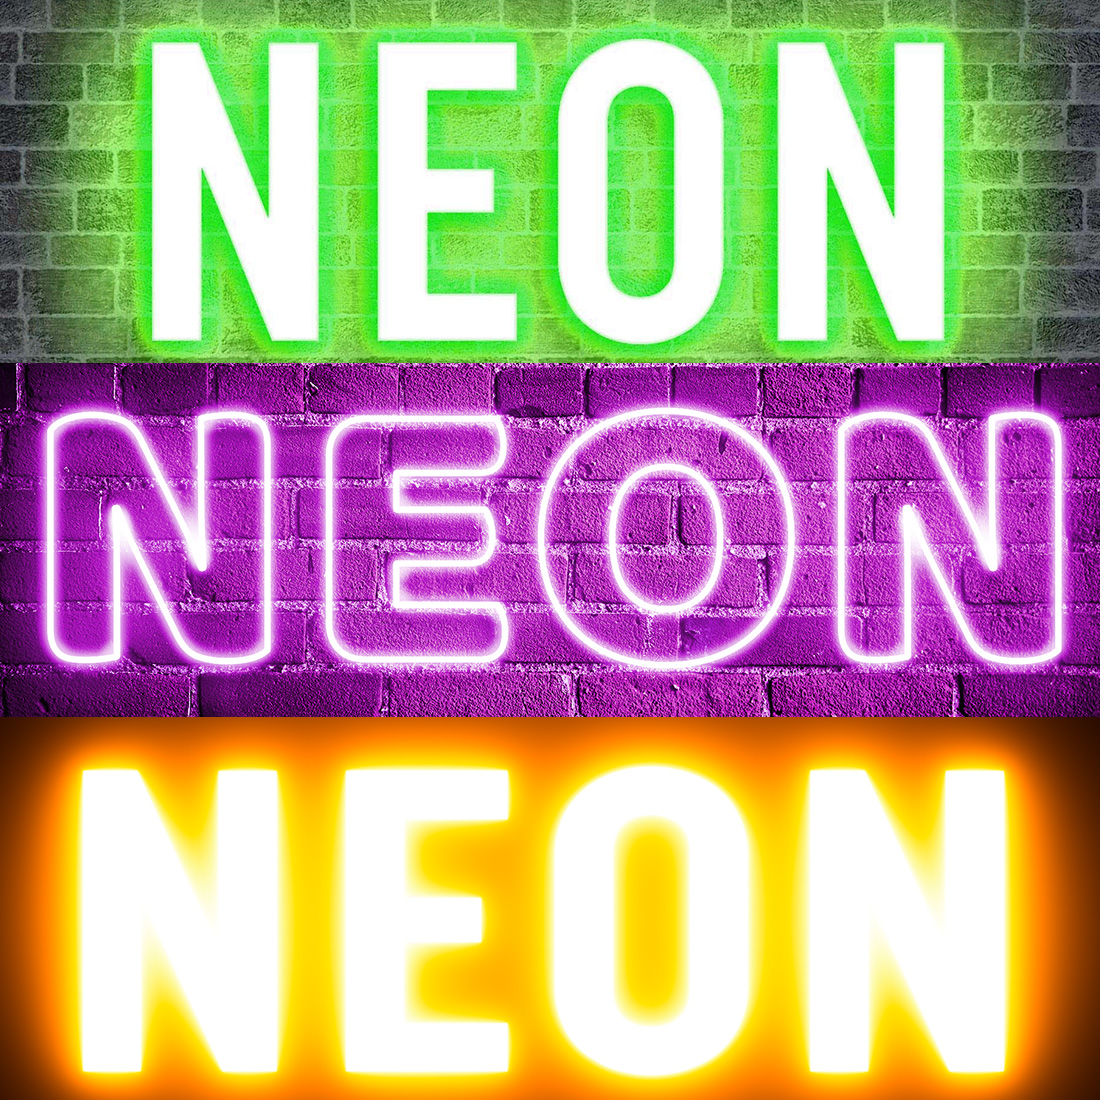 Neon sign that reads neon neon neon neon neon neon neon neon neon neon neon.